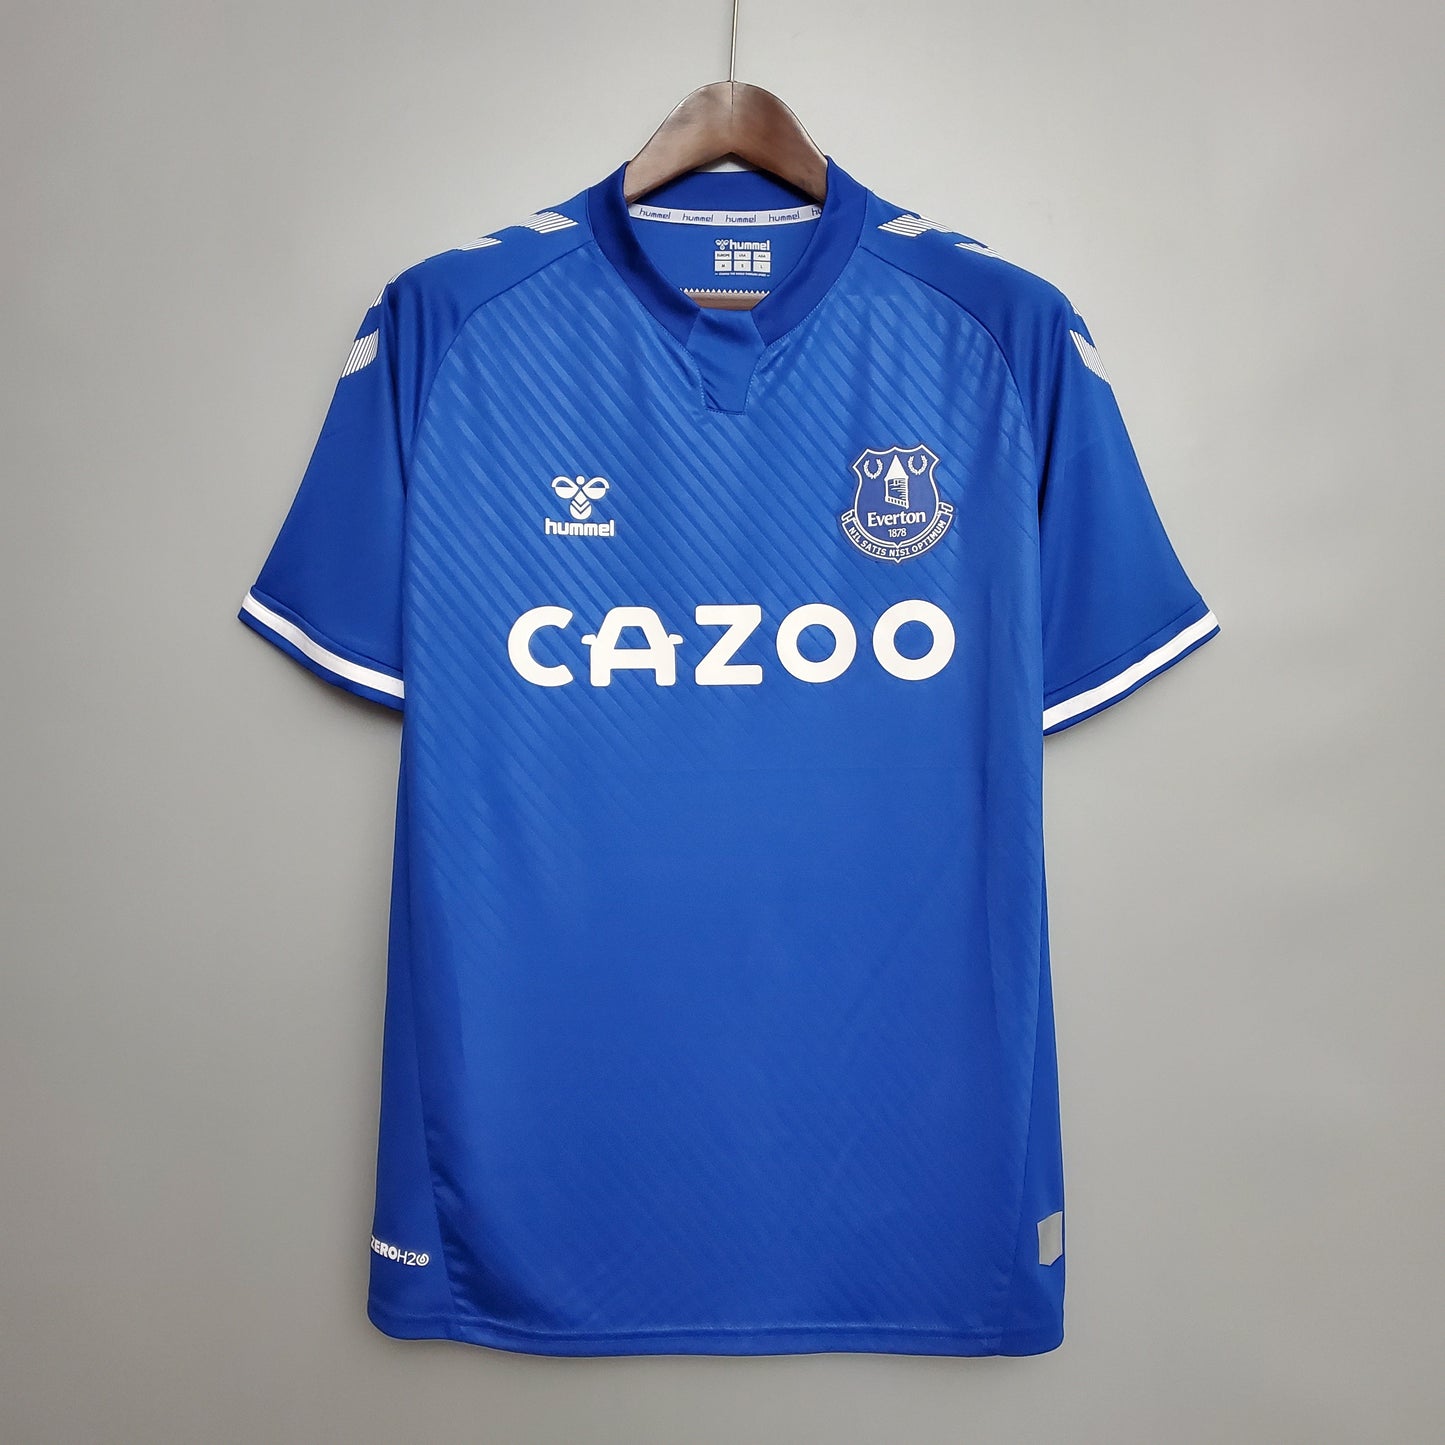 Everton Home Kit 20/21